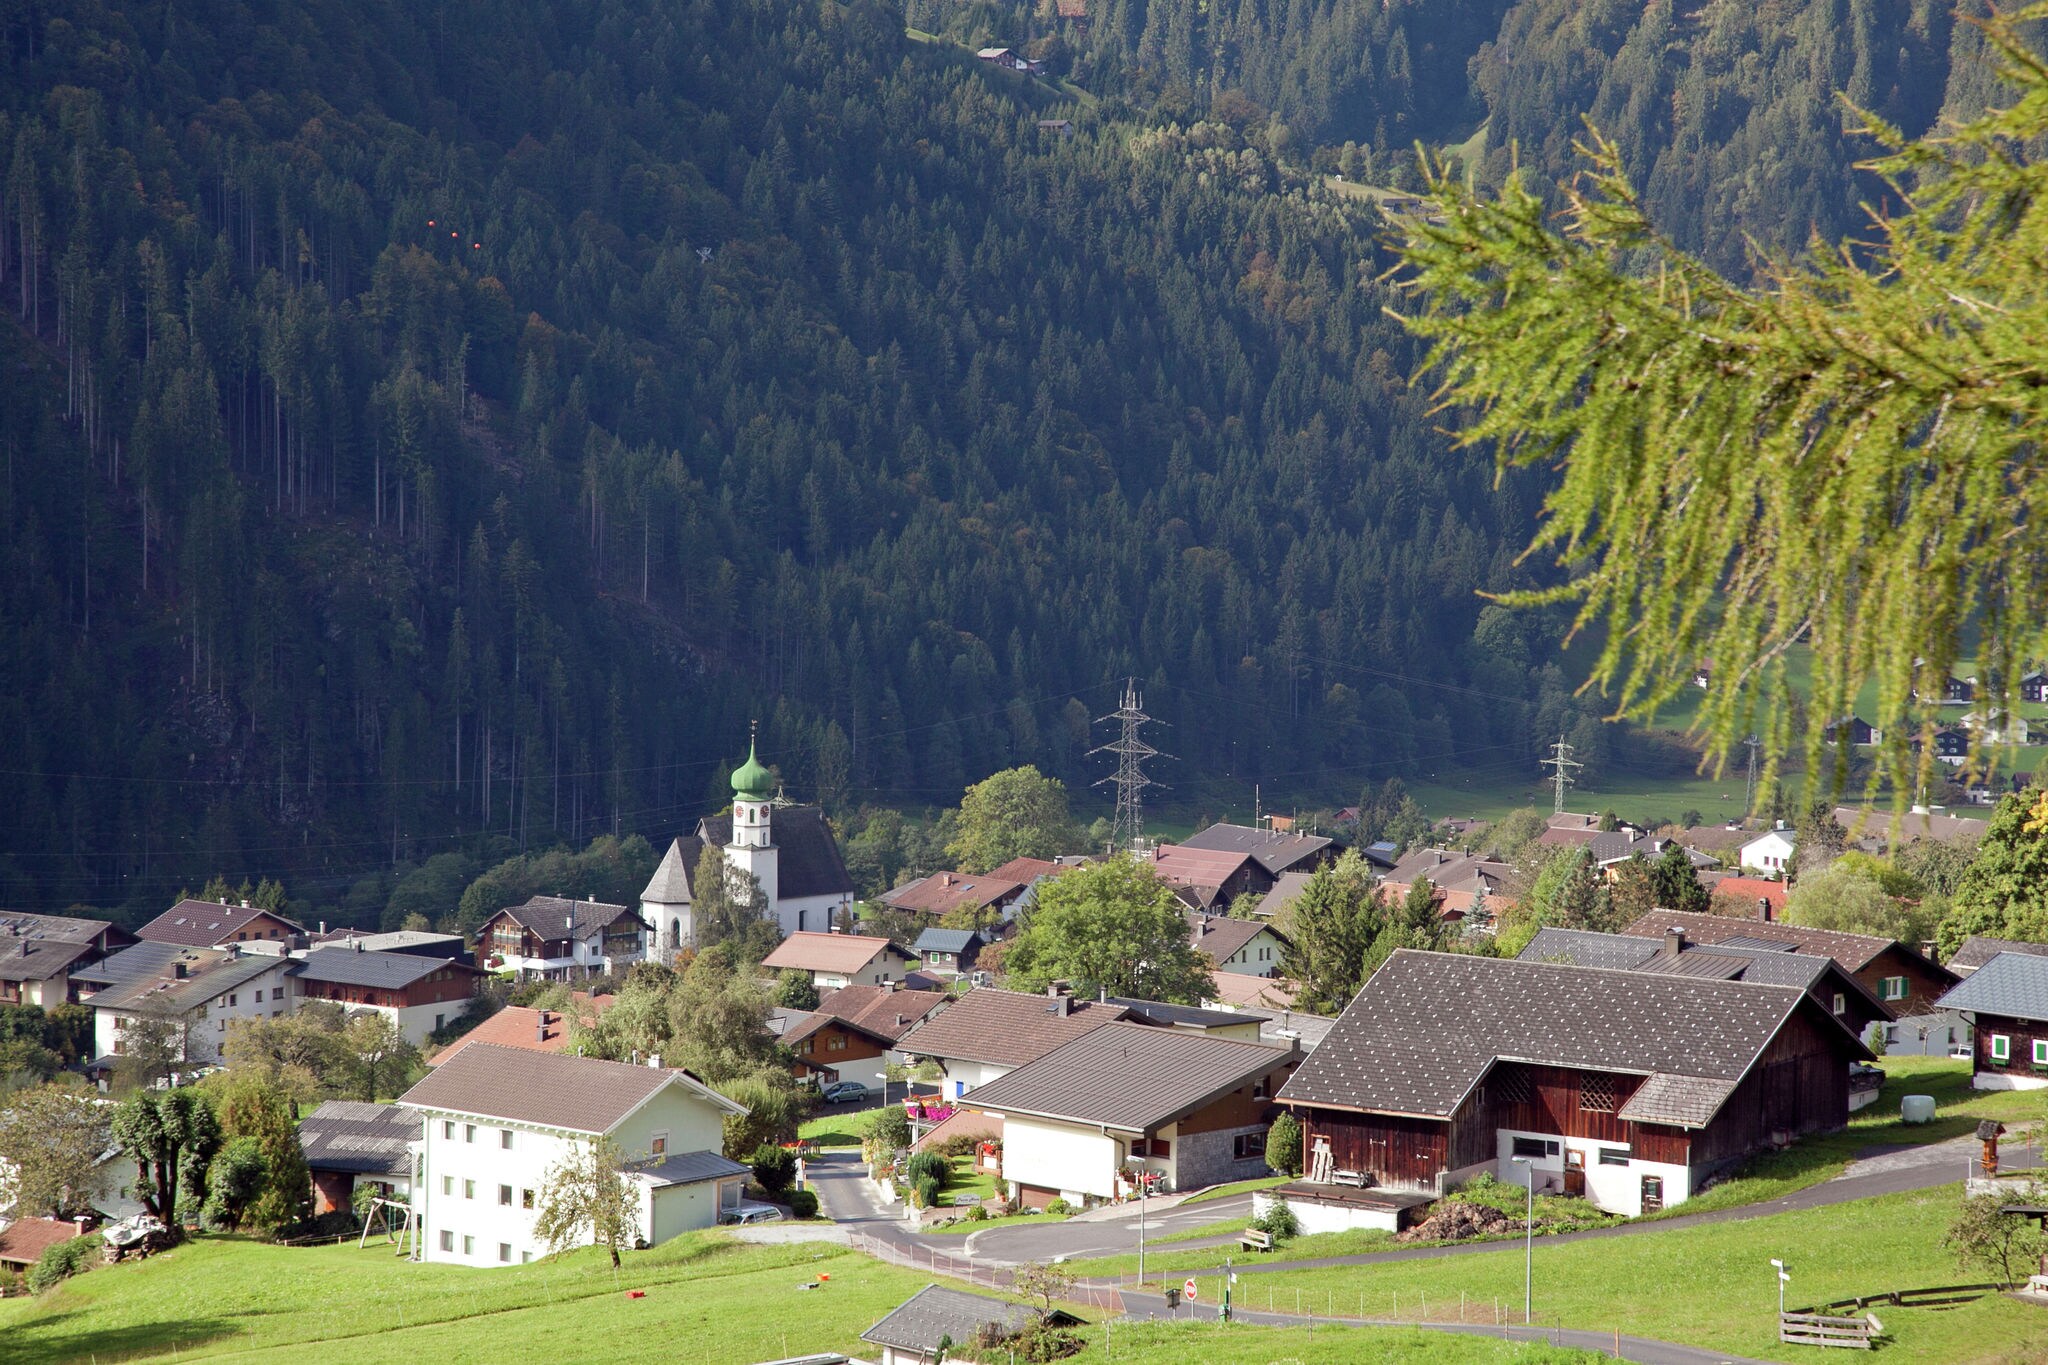 Ferienwohnung in St. Gallenkirch, Vorarlberg mit Garten